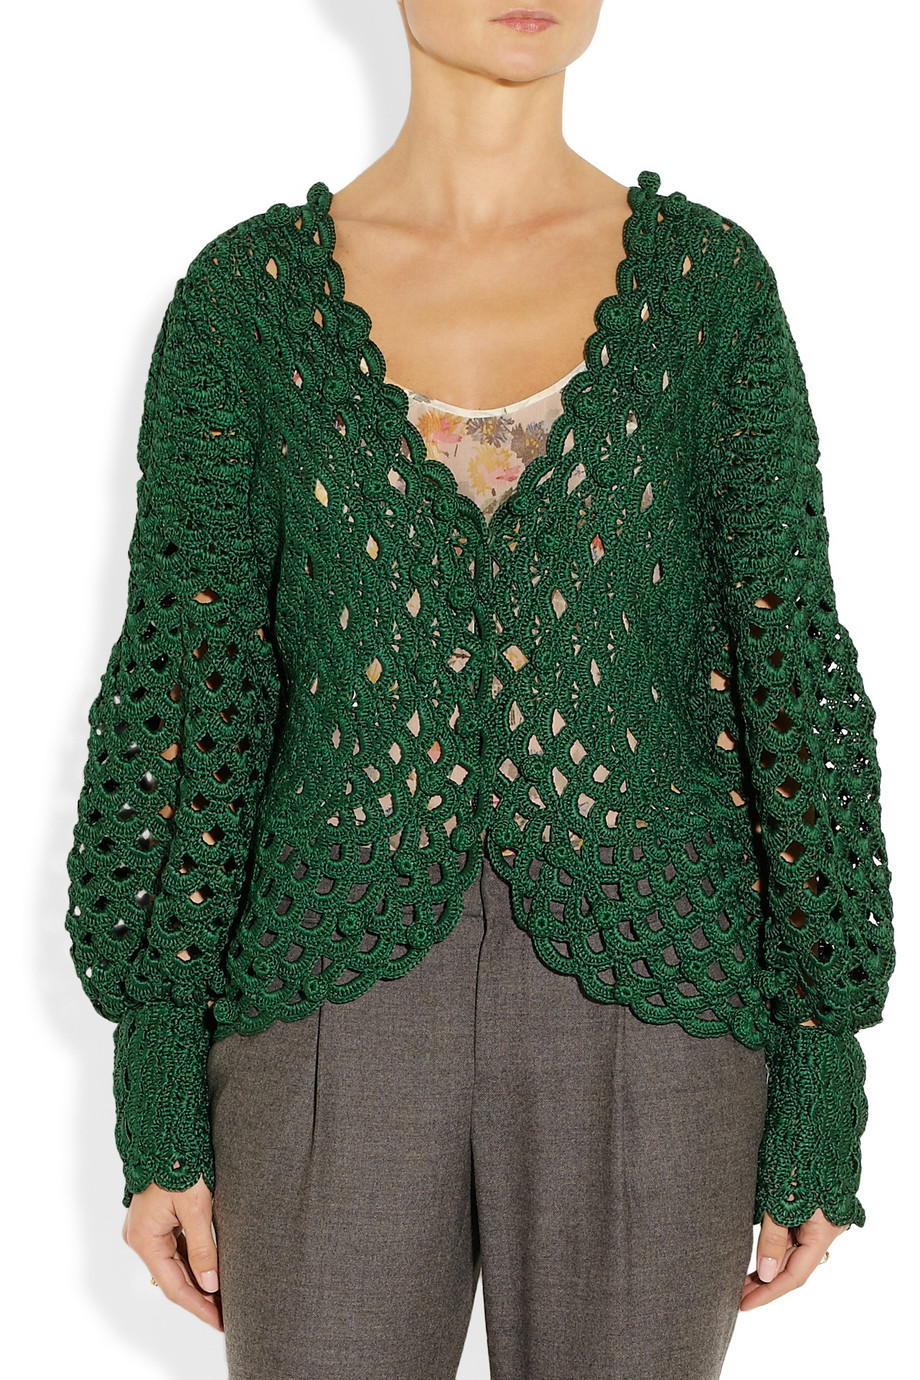 Oscar de la Renta Crochet/ Knit Silk Cardigan in Green - Lyst